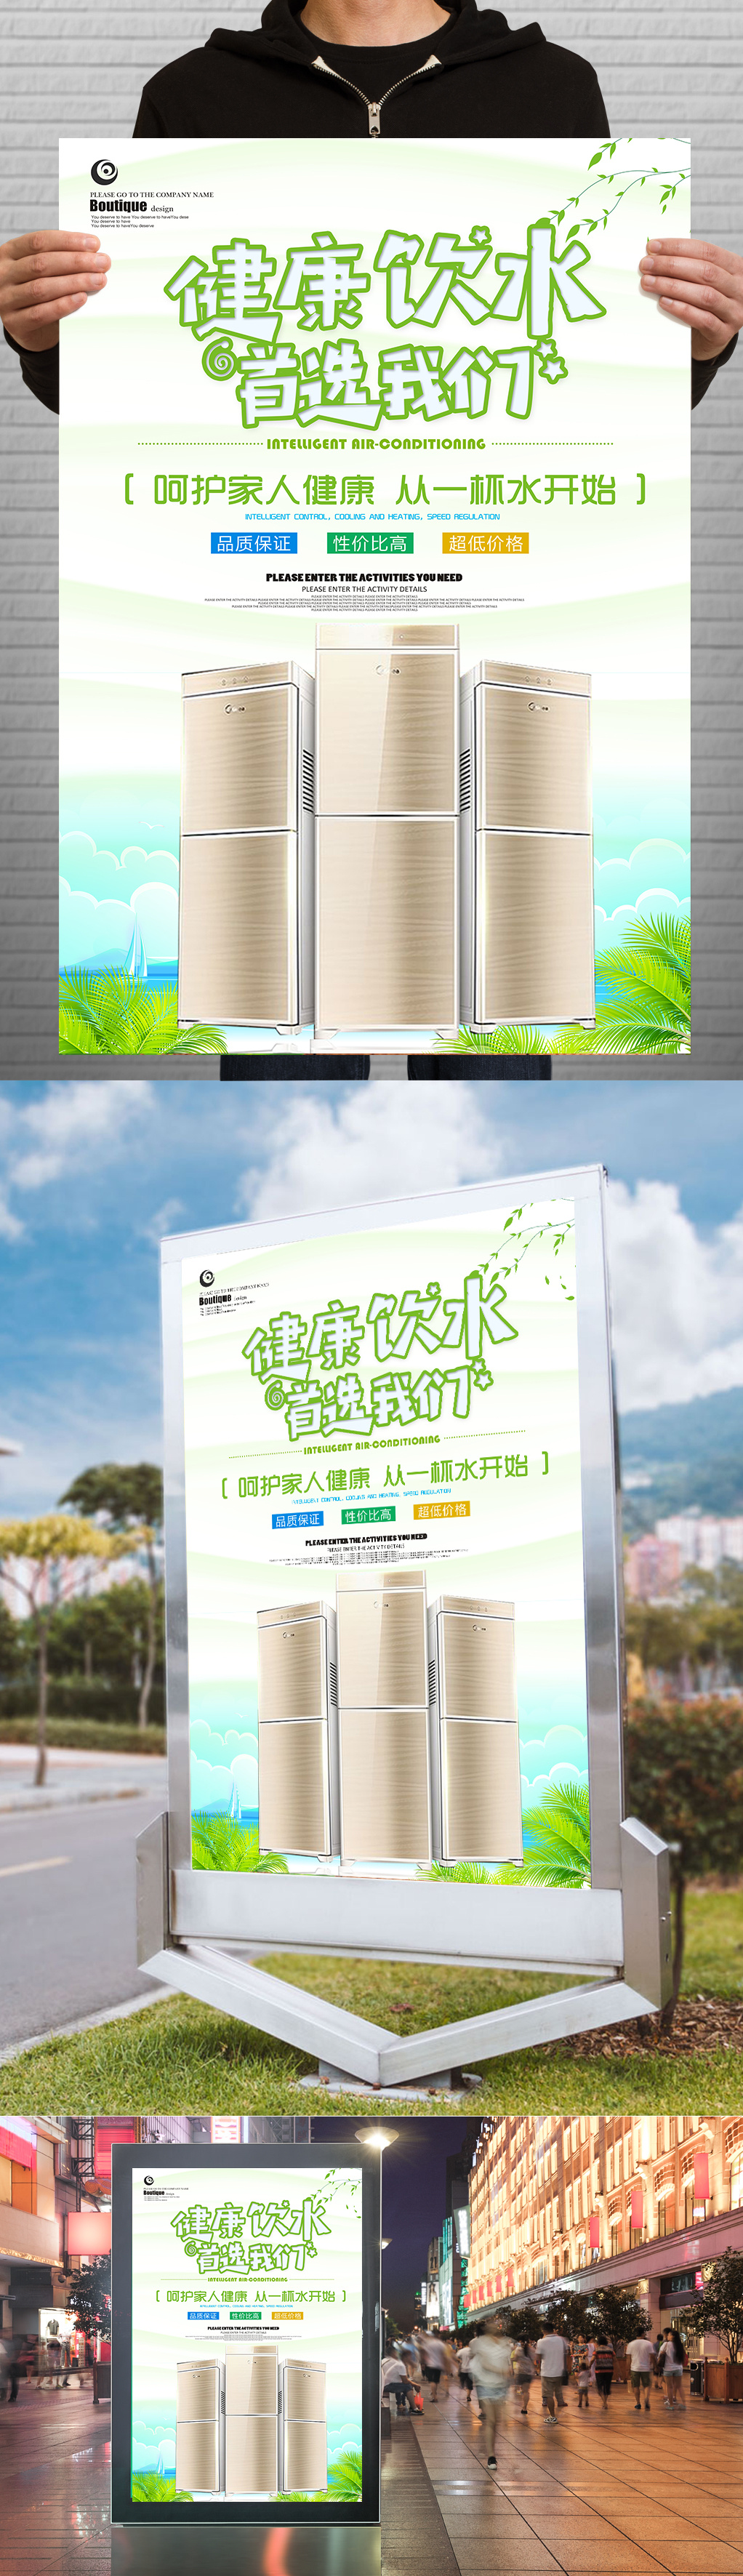 清新饮水机产品宣传海报